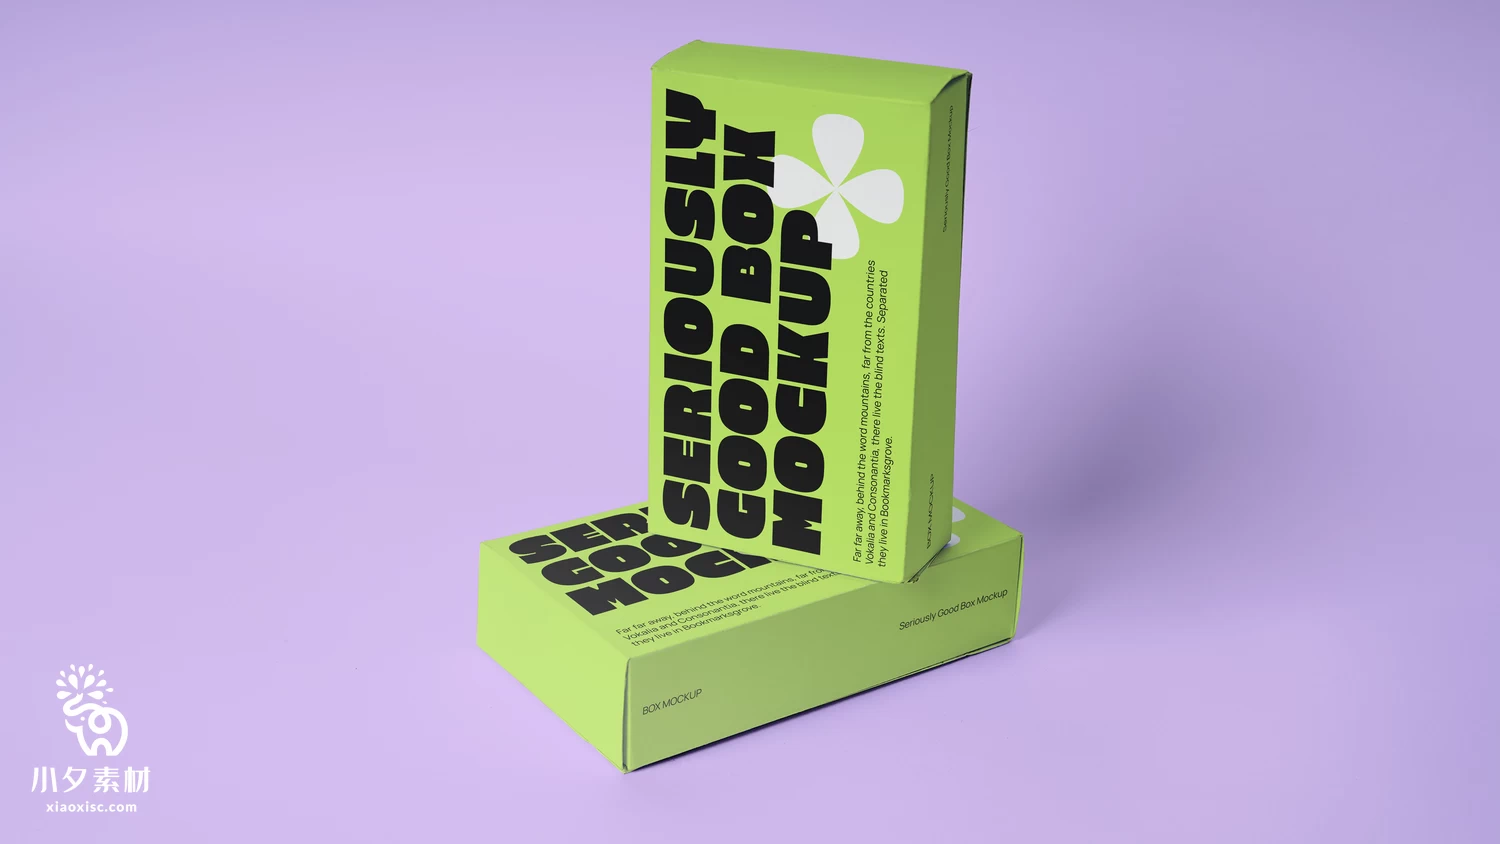 品牌质感包装盒纸盒VI提案展示效果智能贴图样机PSD分层设计素材【004】